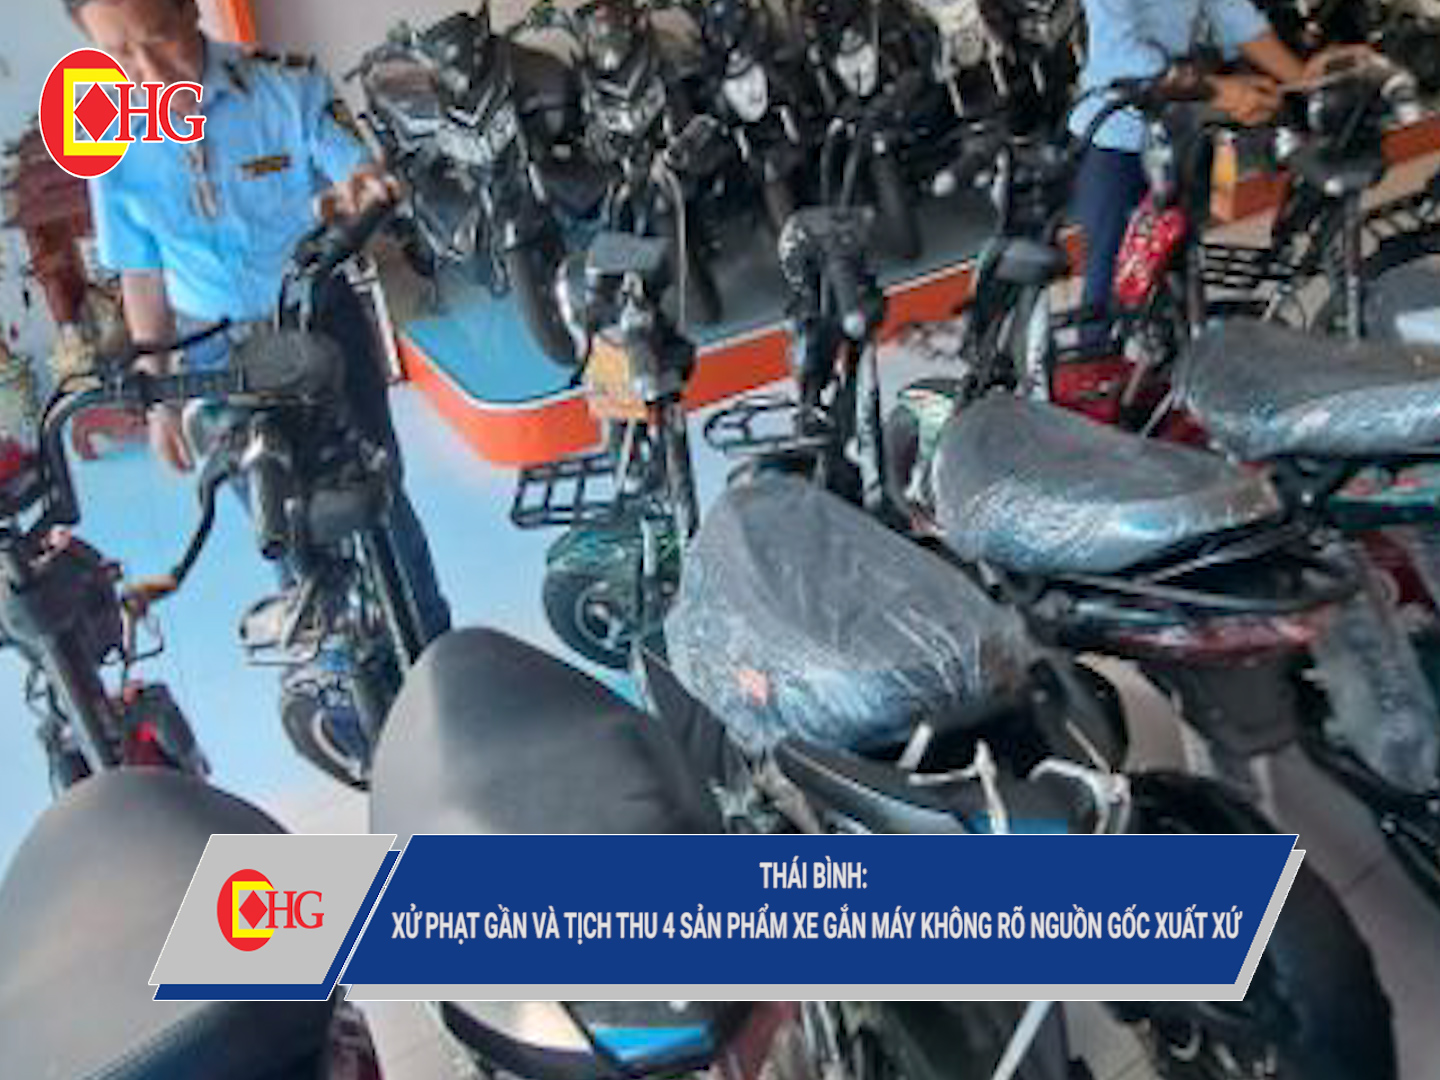 Thái Bình: Xử phạt và tịch thu 4 sản phẩm xe gắn máy không rõ nguồn gốc xuất xứ